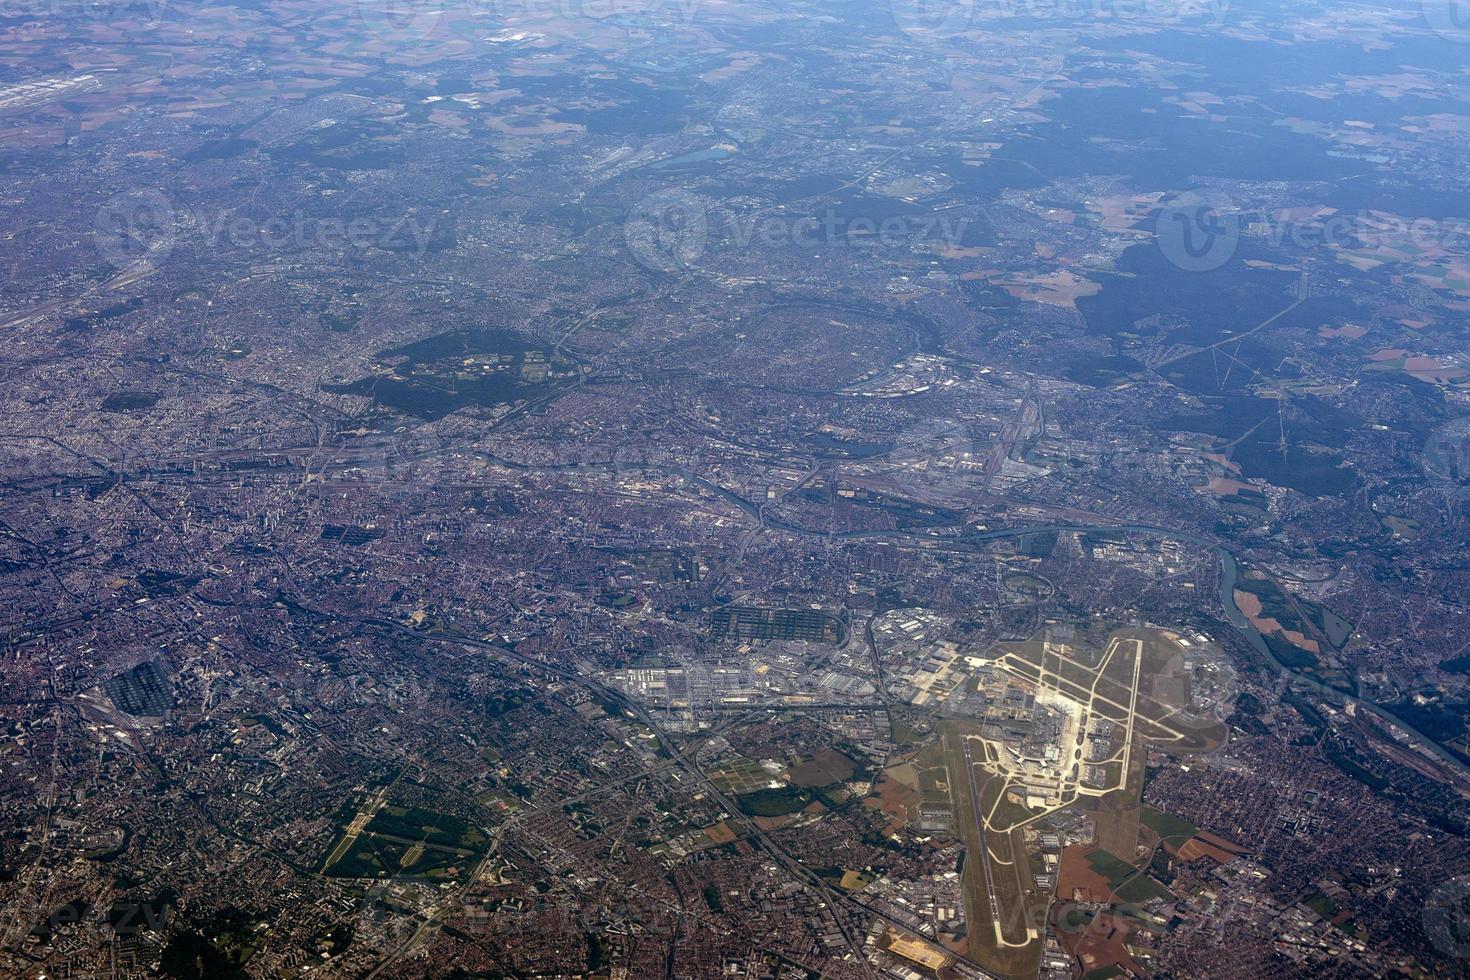 gatwick londres vue aérienne panorama d'avion photo